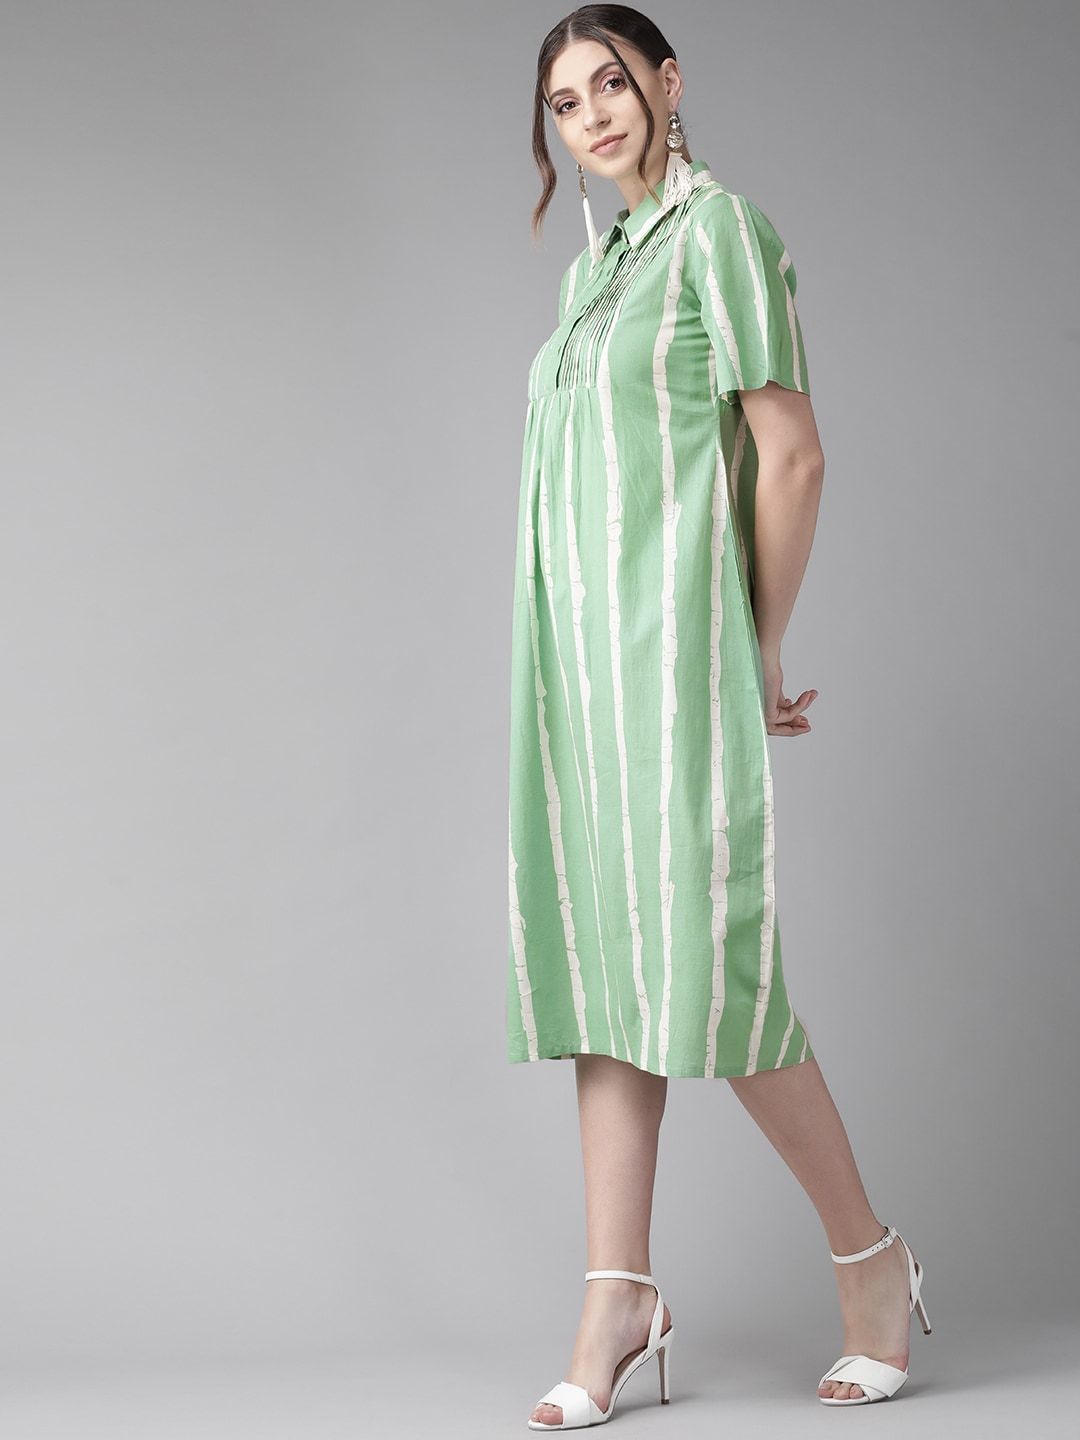 Women's  Green & White Striped Shirt Dress - AKS